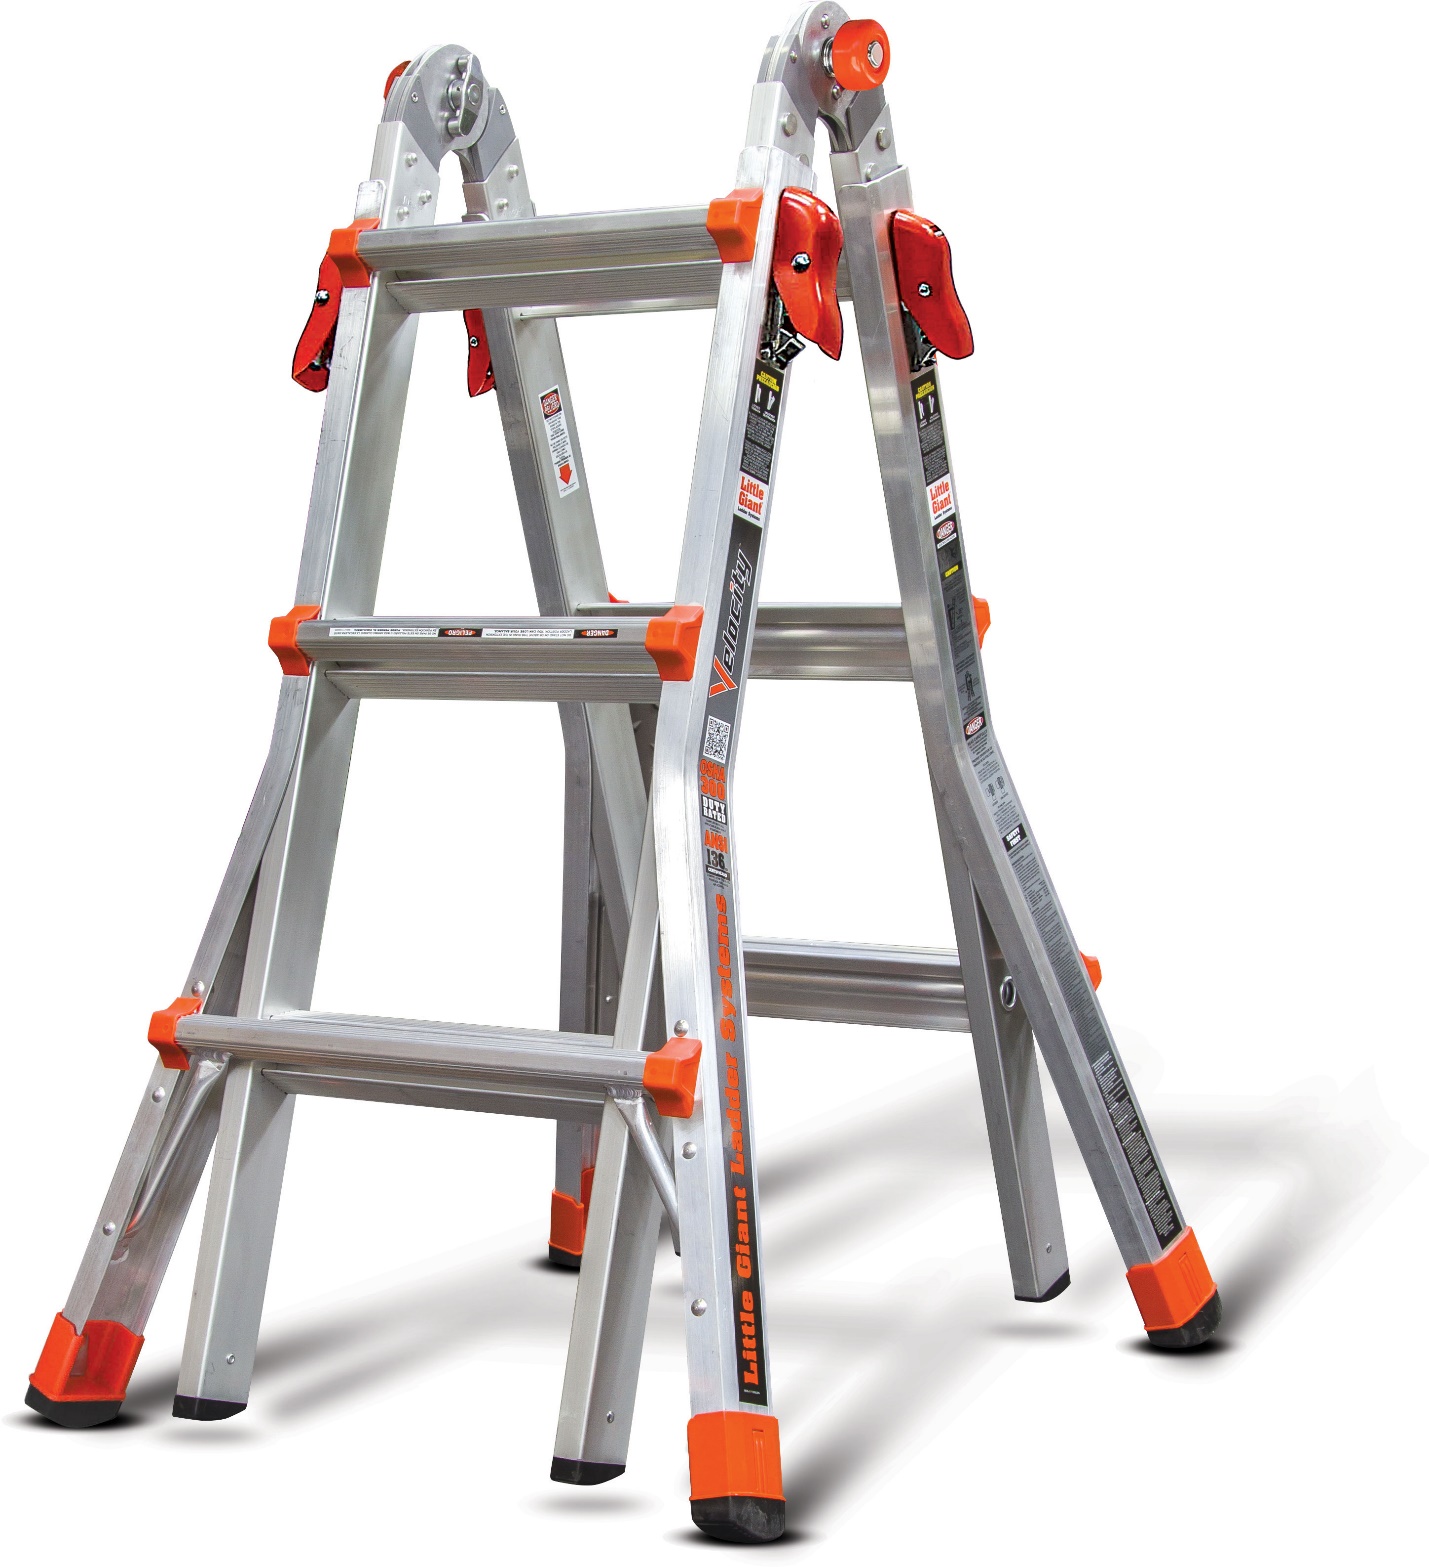 Little Giant multipurpose ladders